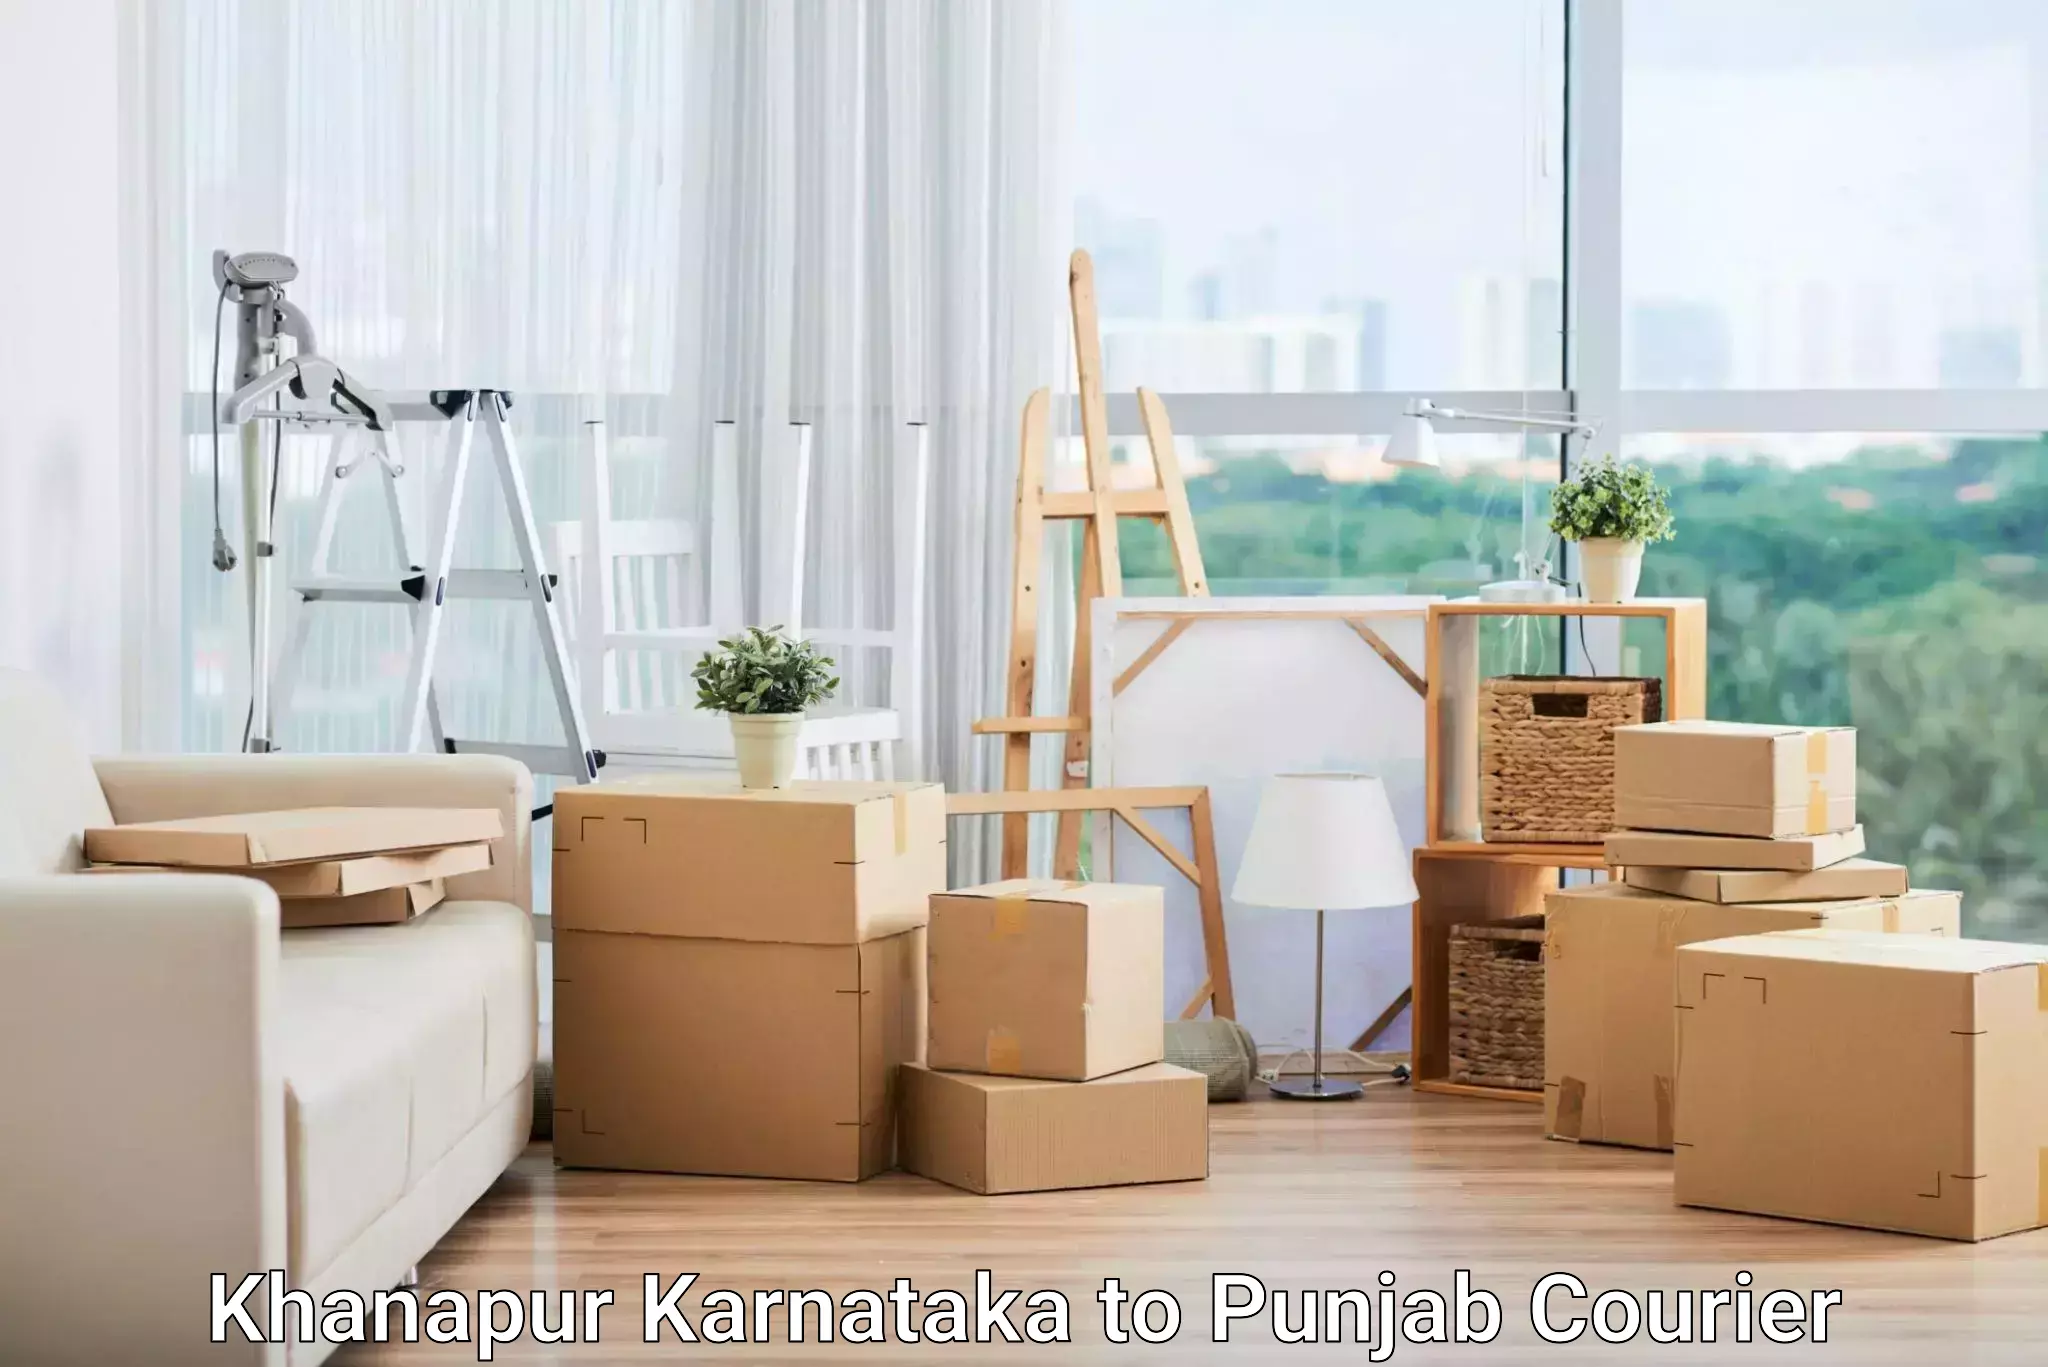 High-capacity parcel service Khanapur Karnataka to Beas